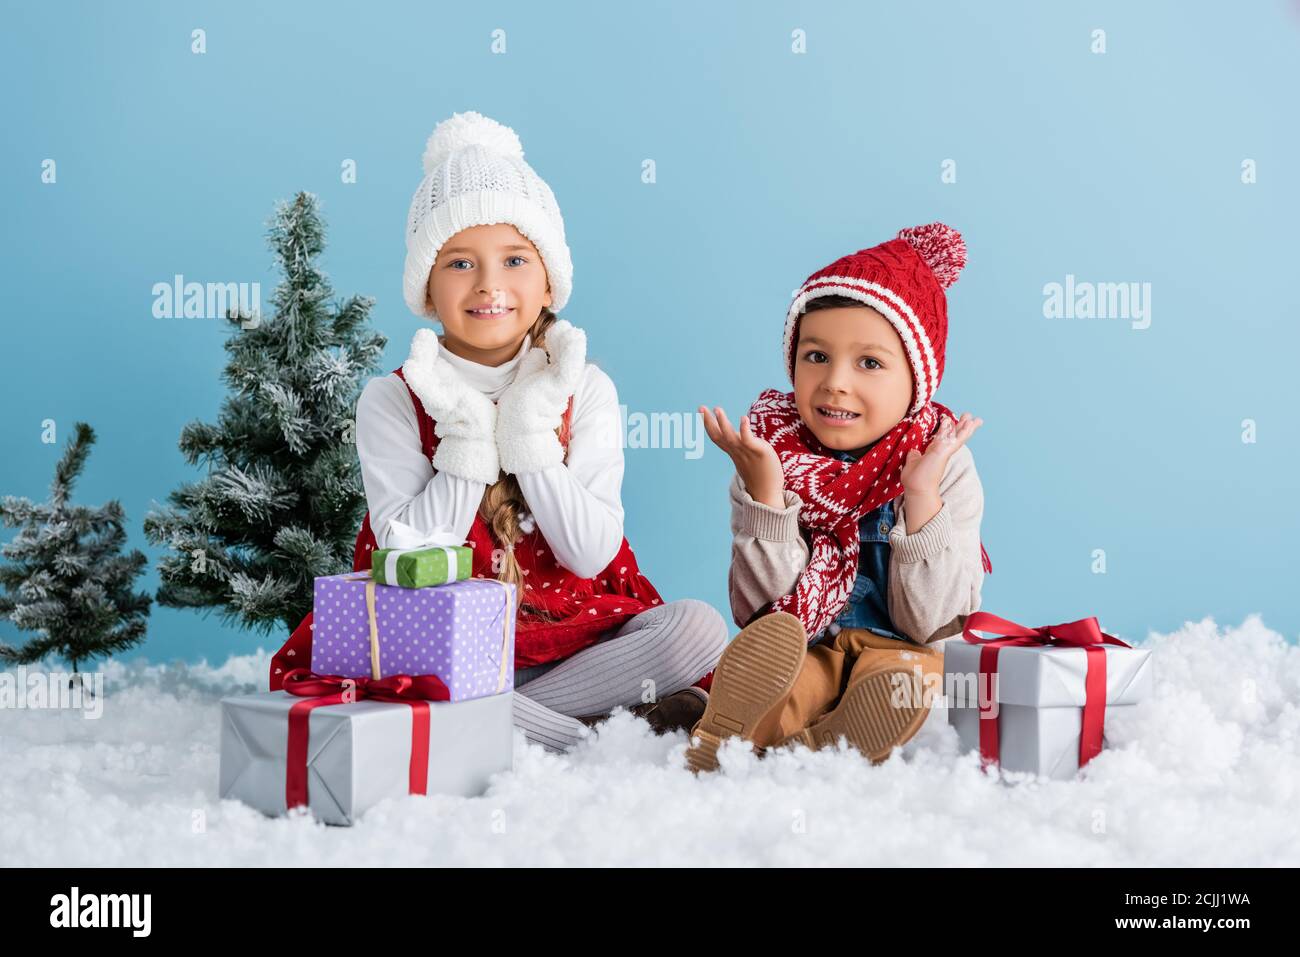 Kinder im Winteroutfit sitzen auf Schnee und gestikulieren in der Nähe Geschenke und Tanne isoliert auf blau Stockfoto